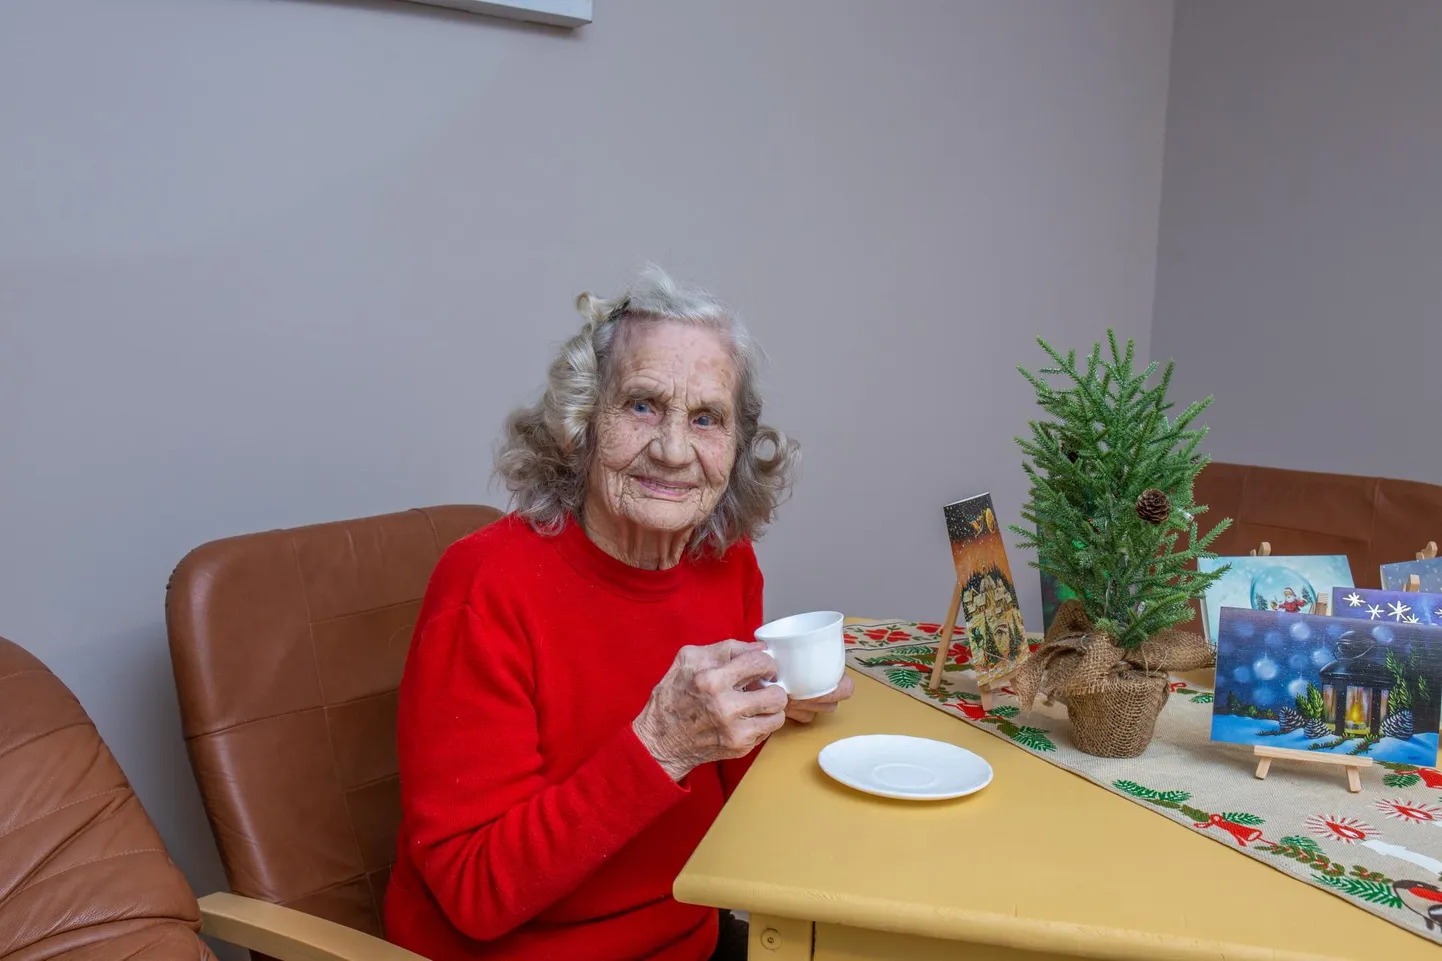 103-aastane Jelena Pütisepp, keda kõik Ellaks kutsuvad, suisa pakatas elurõõmust, kui jutustas Pärsti pansionaadis oma mälestusi.